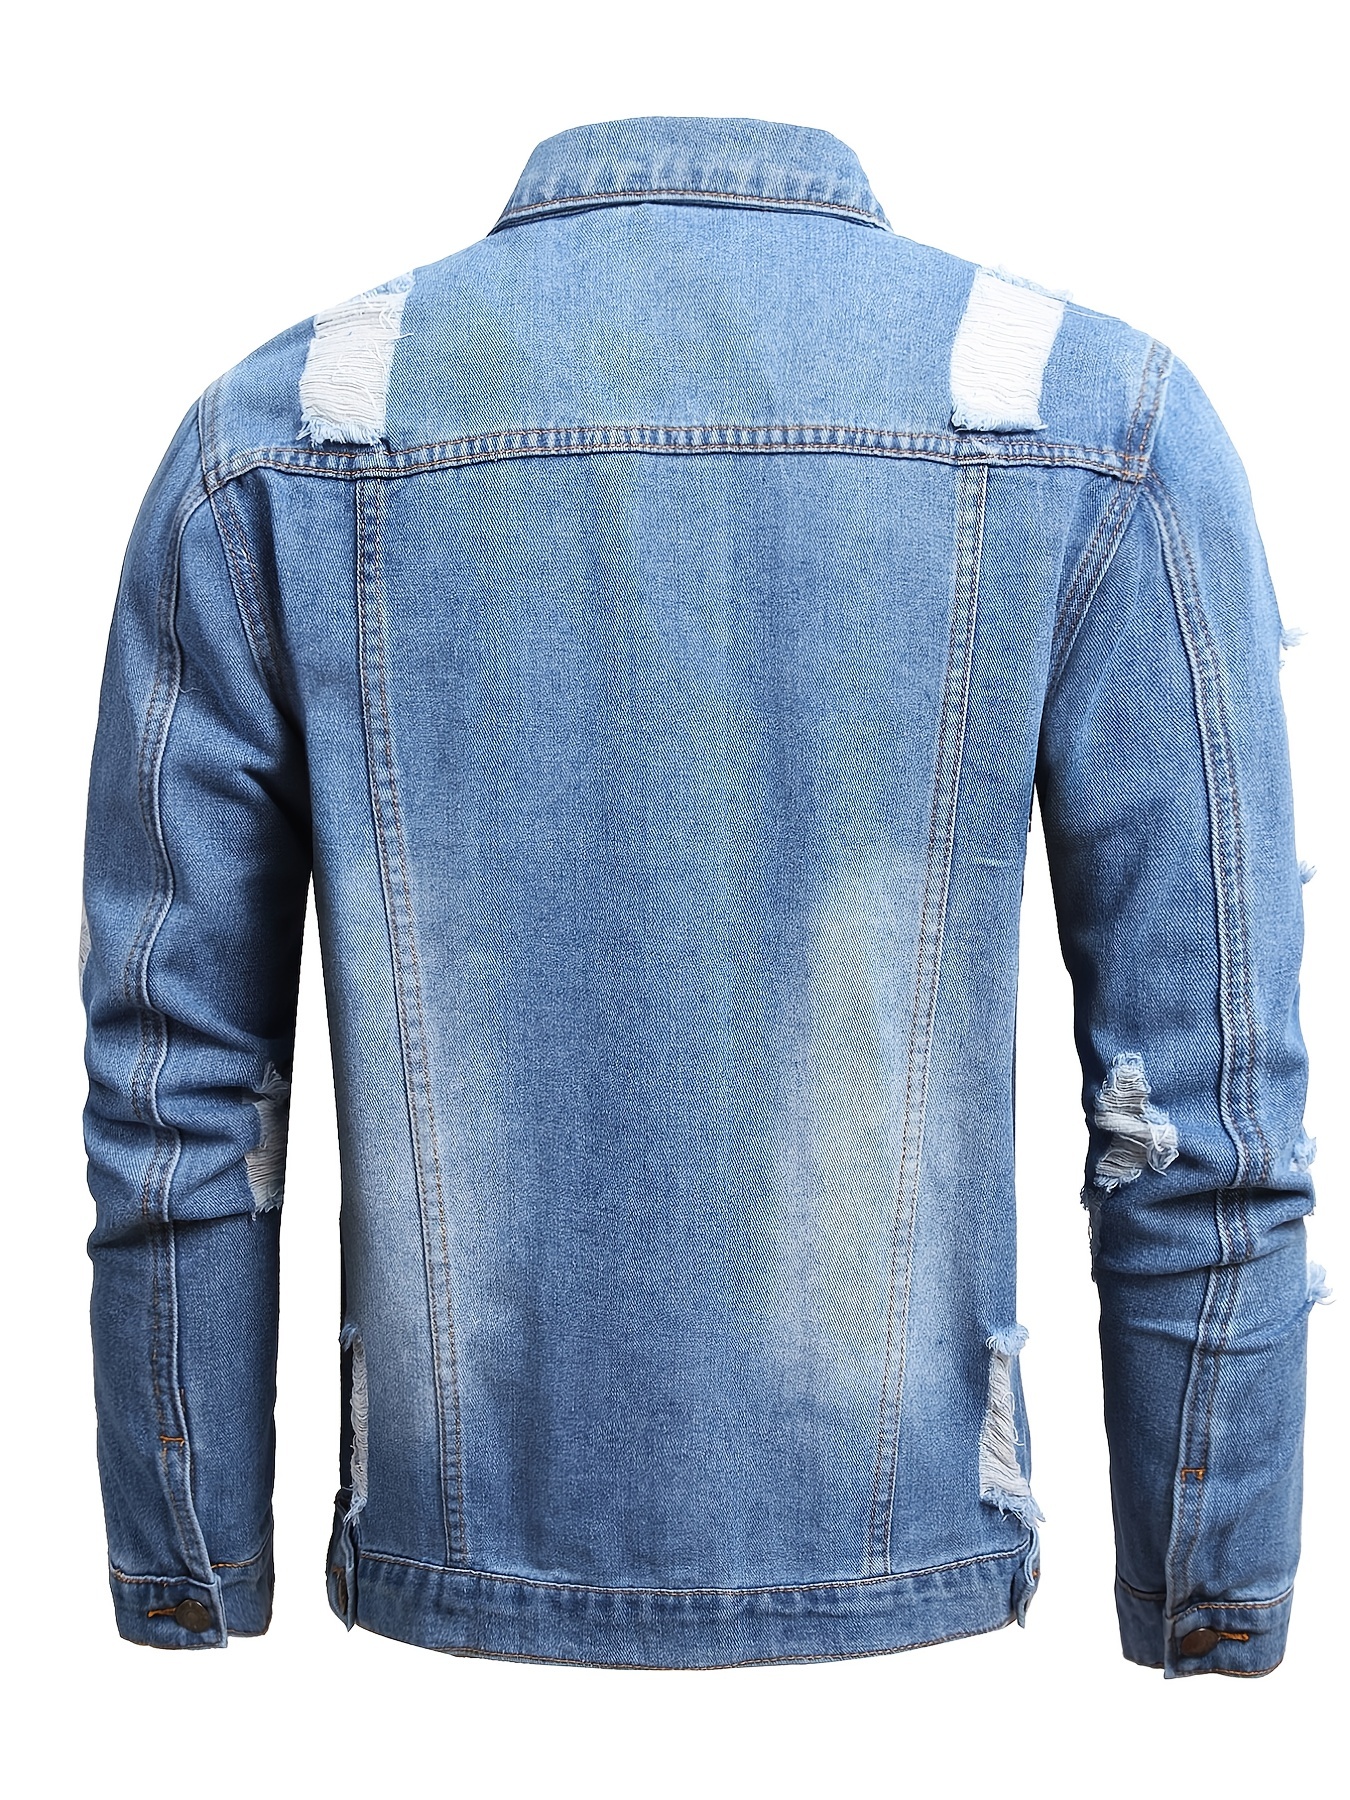 Criminal Damage Distressed Denim Jacket in Blue for Men